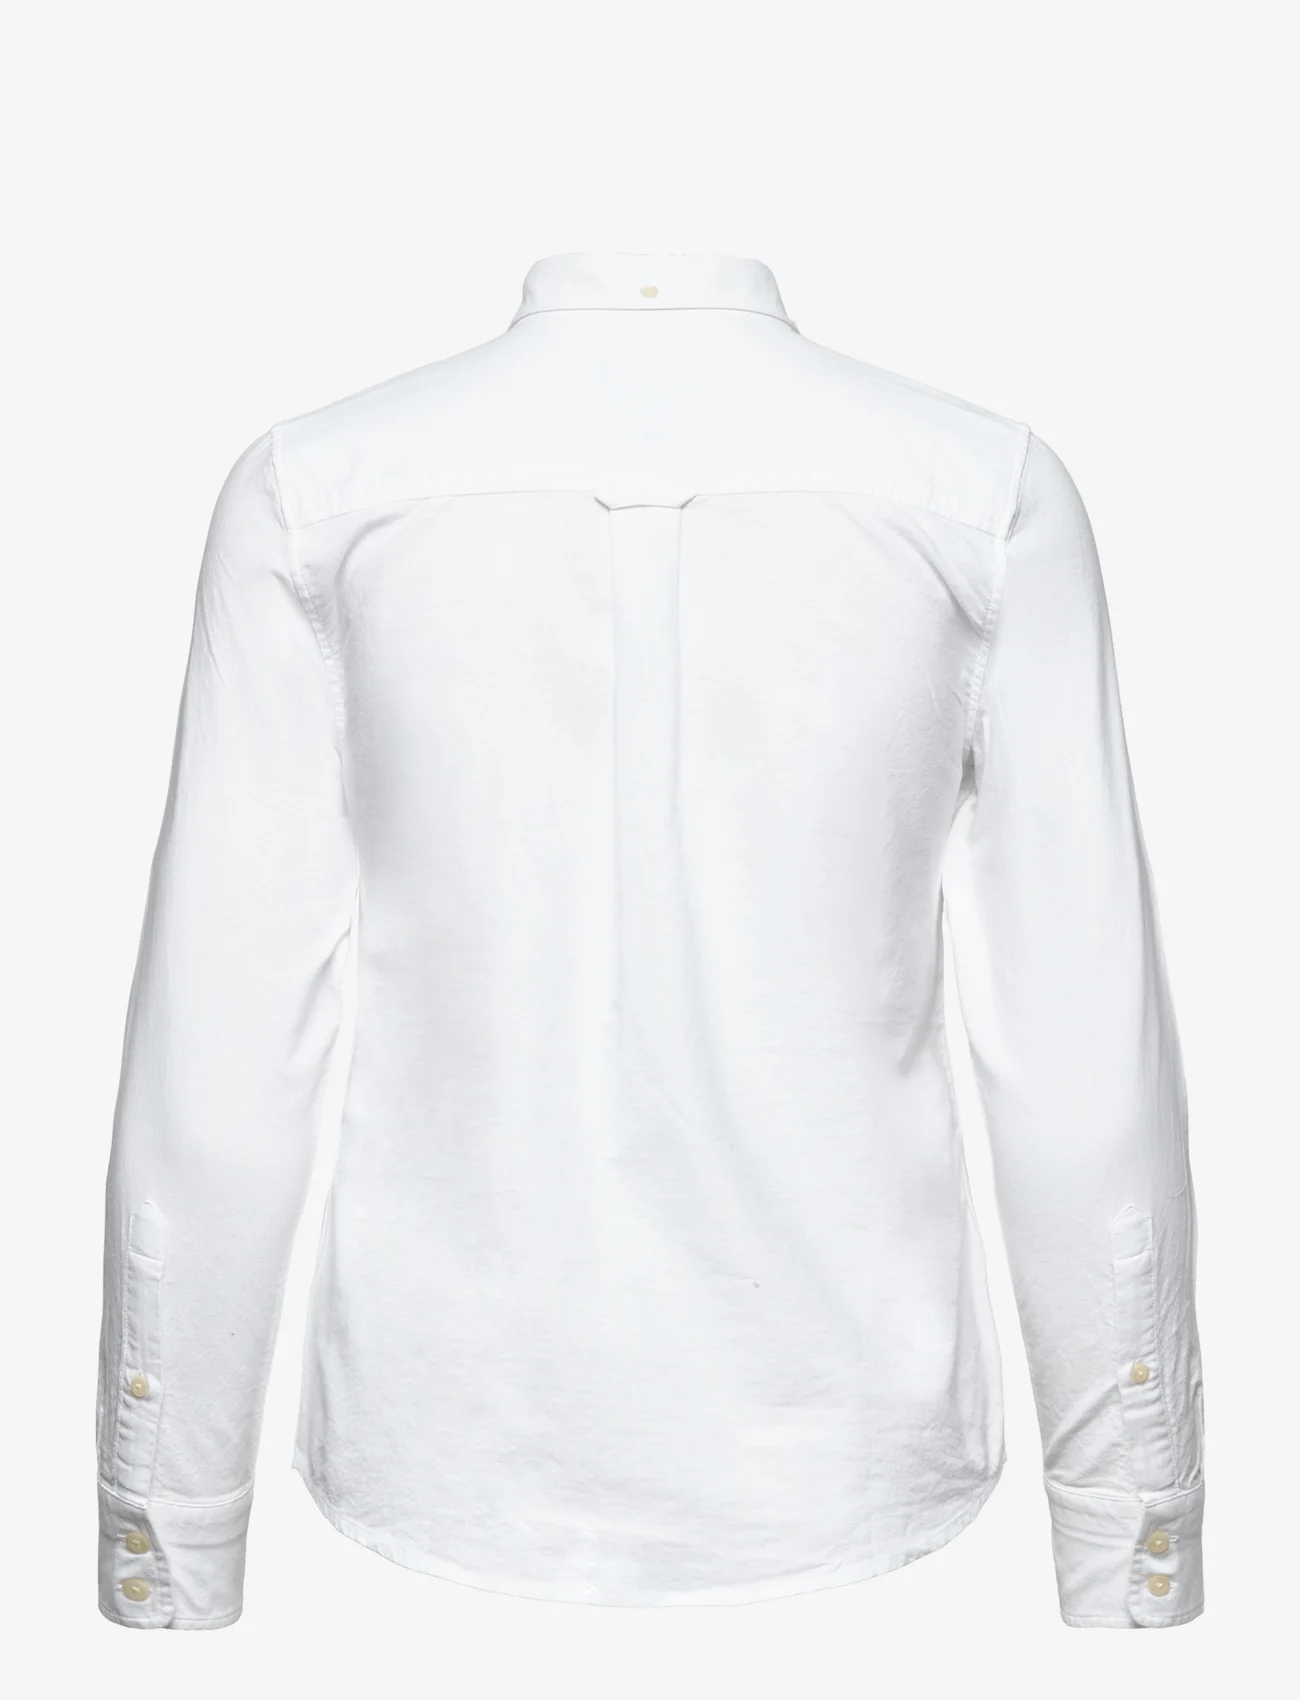 GANT - OXFORD SHIRT - pitkähihaiset paidat - white - 1